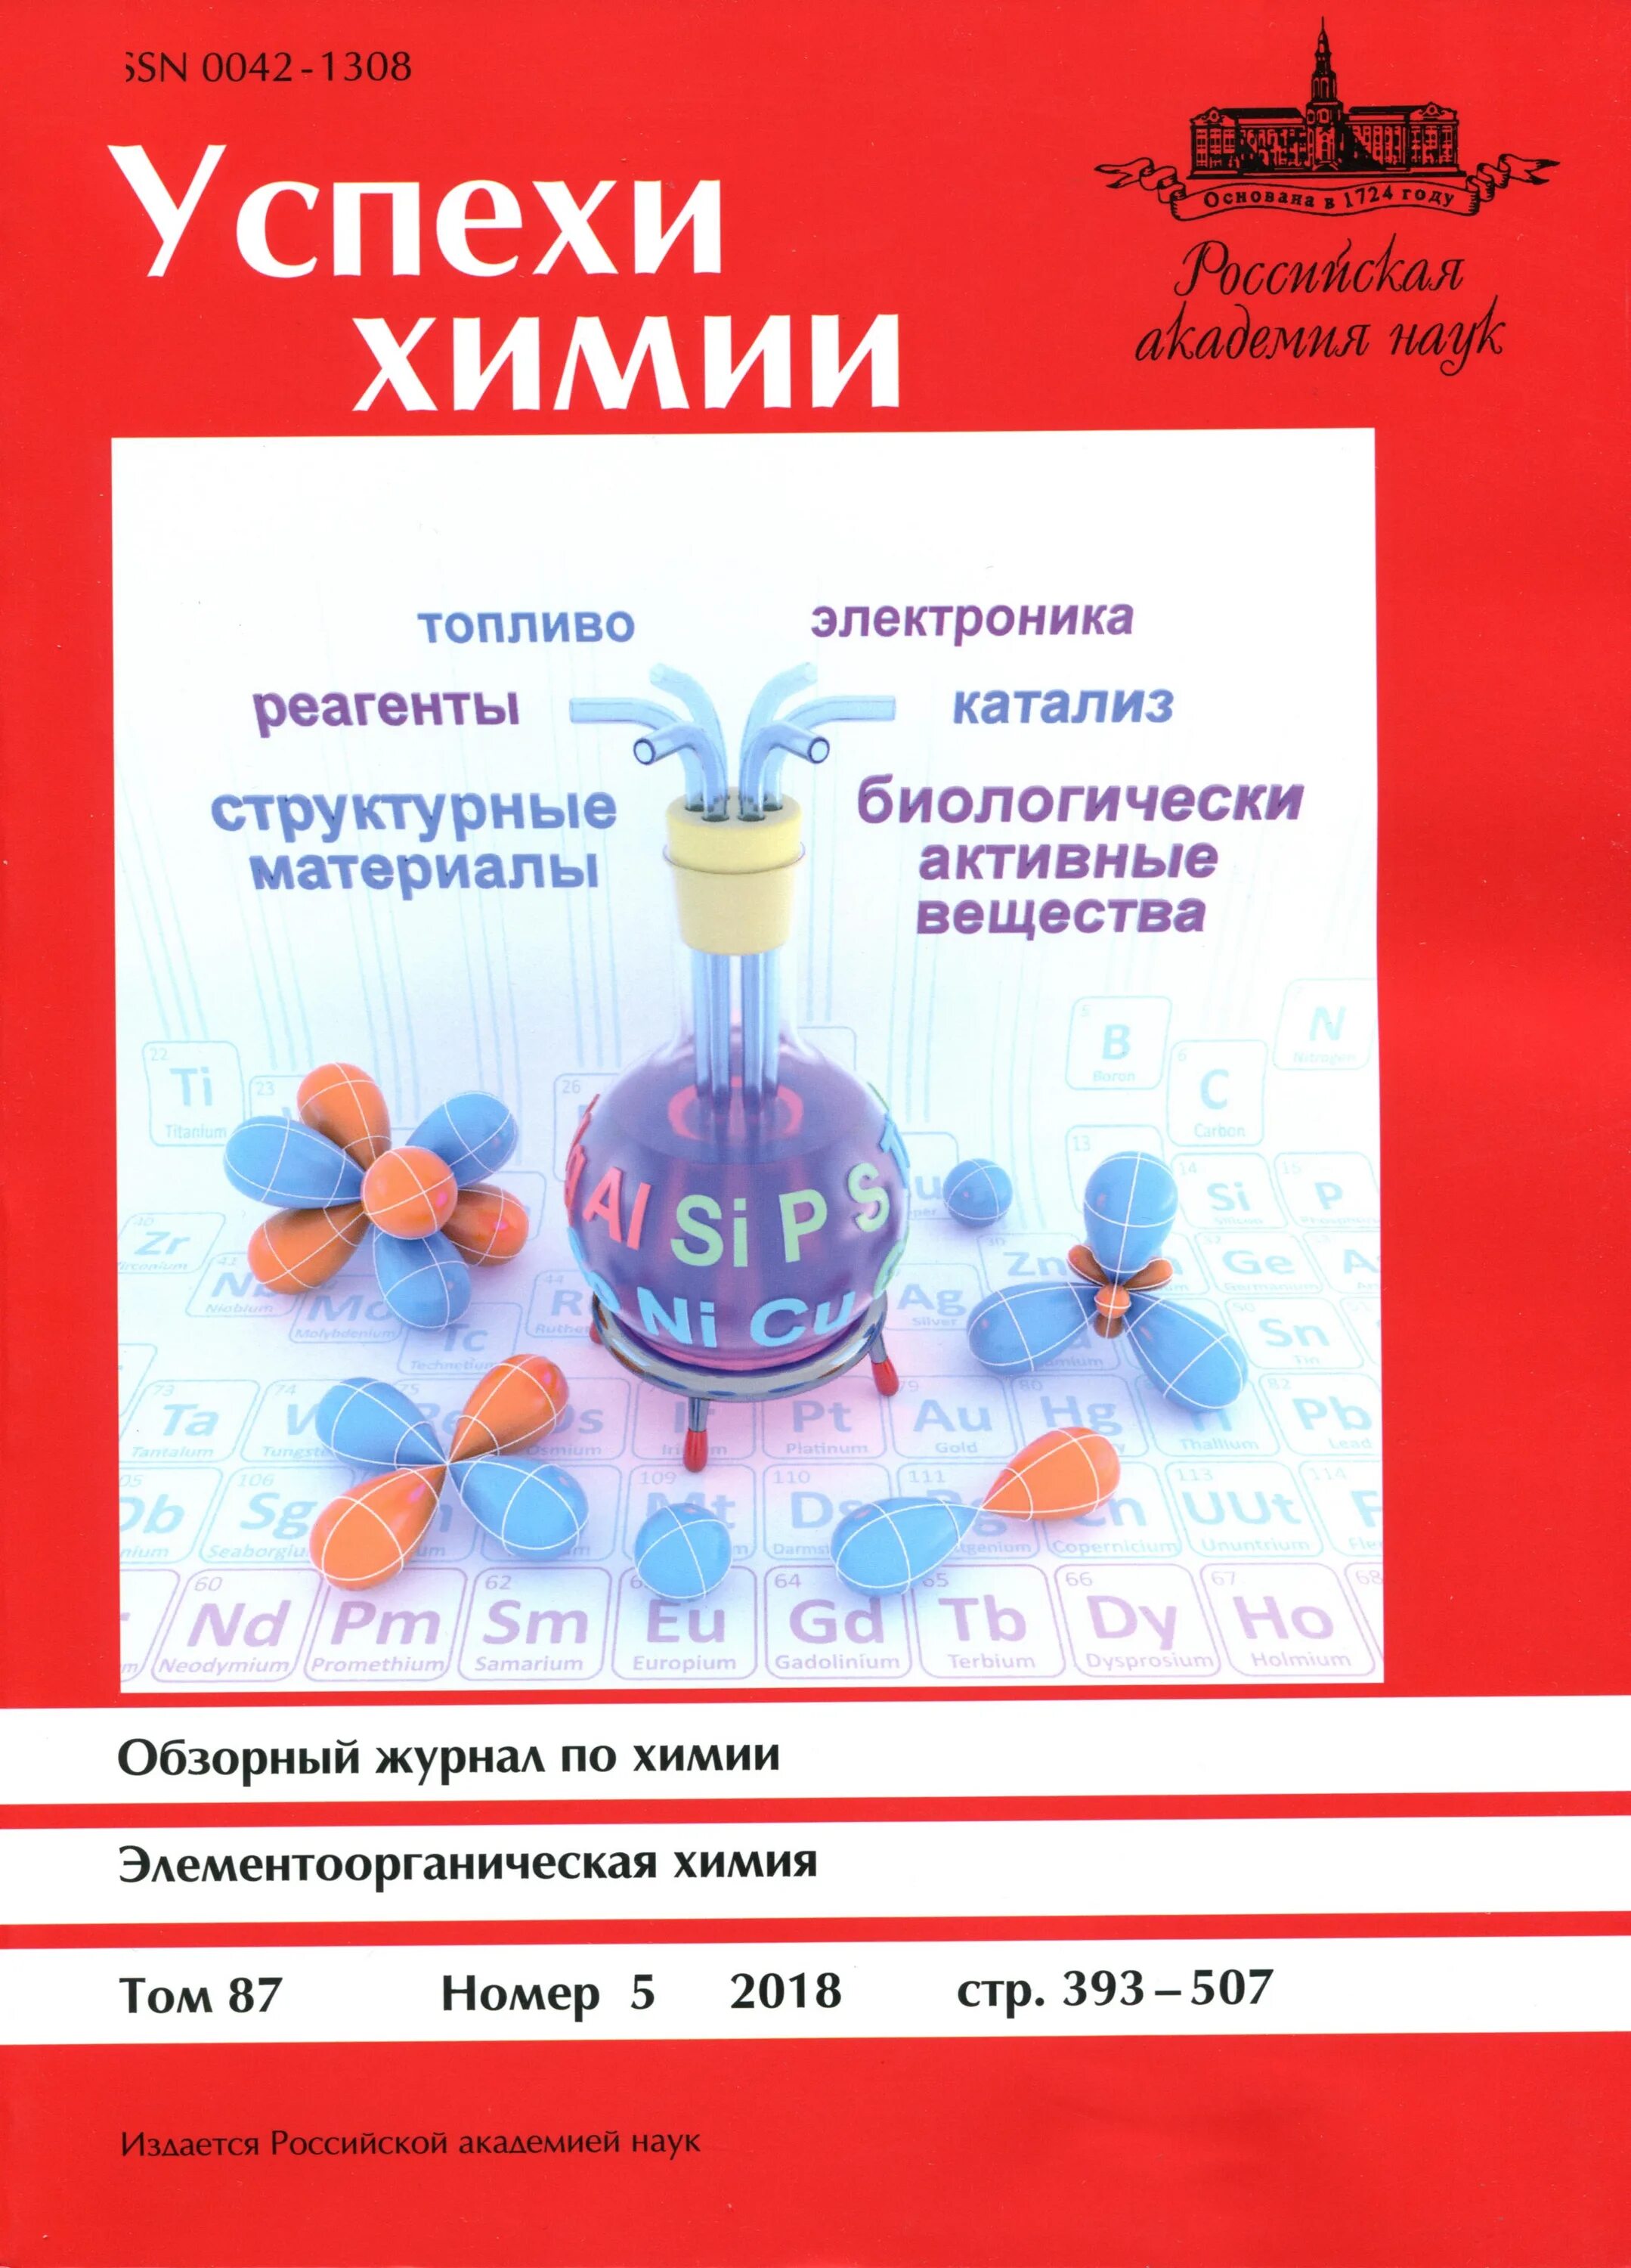 Успехи химии. Журнал химия. Журналы по химии. Детские журналы по химии.